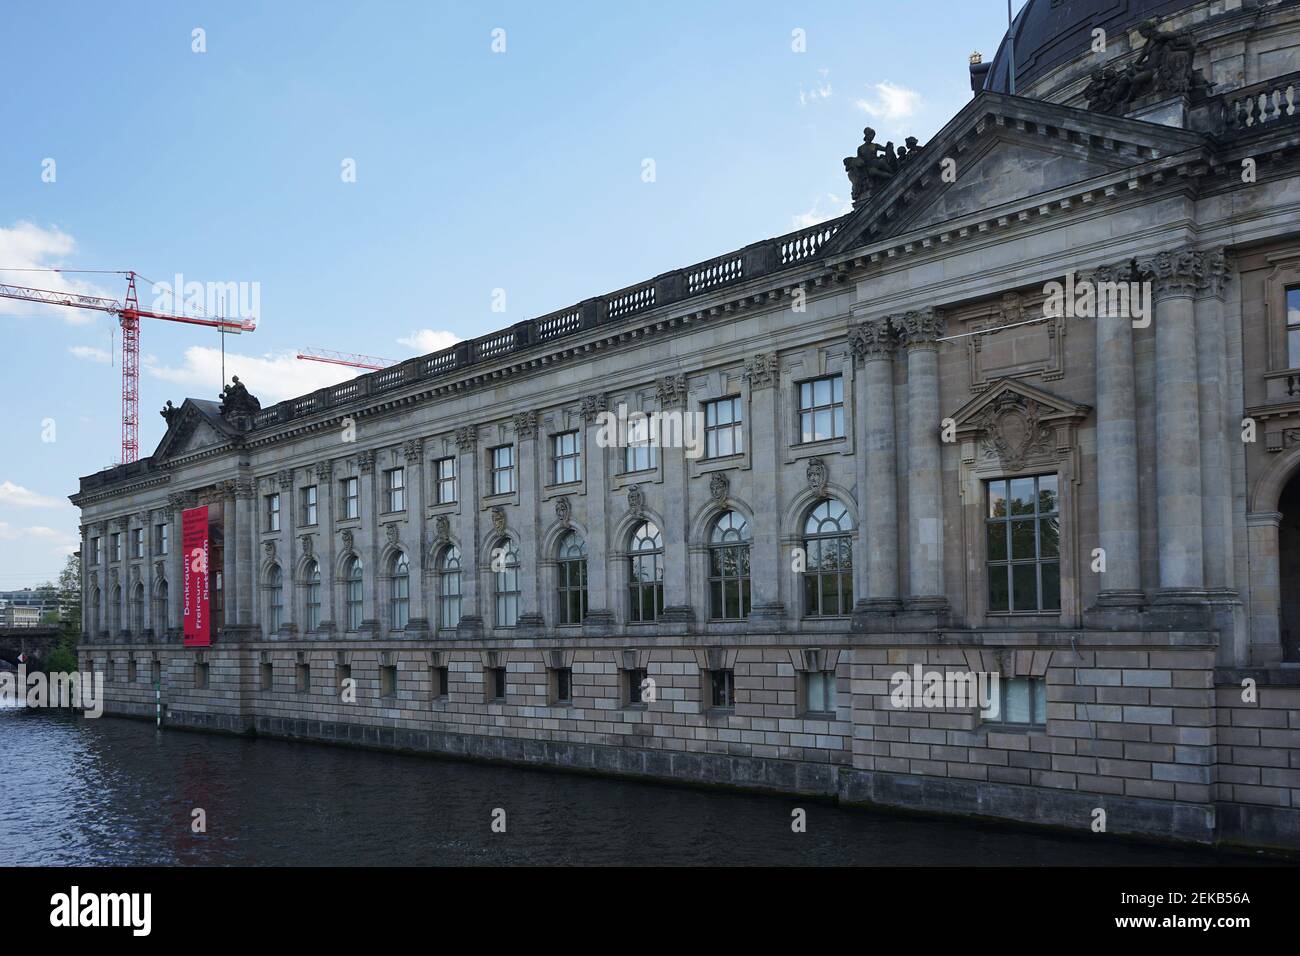 Bode Museum in Berlin. Stock Photo